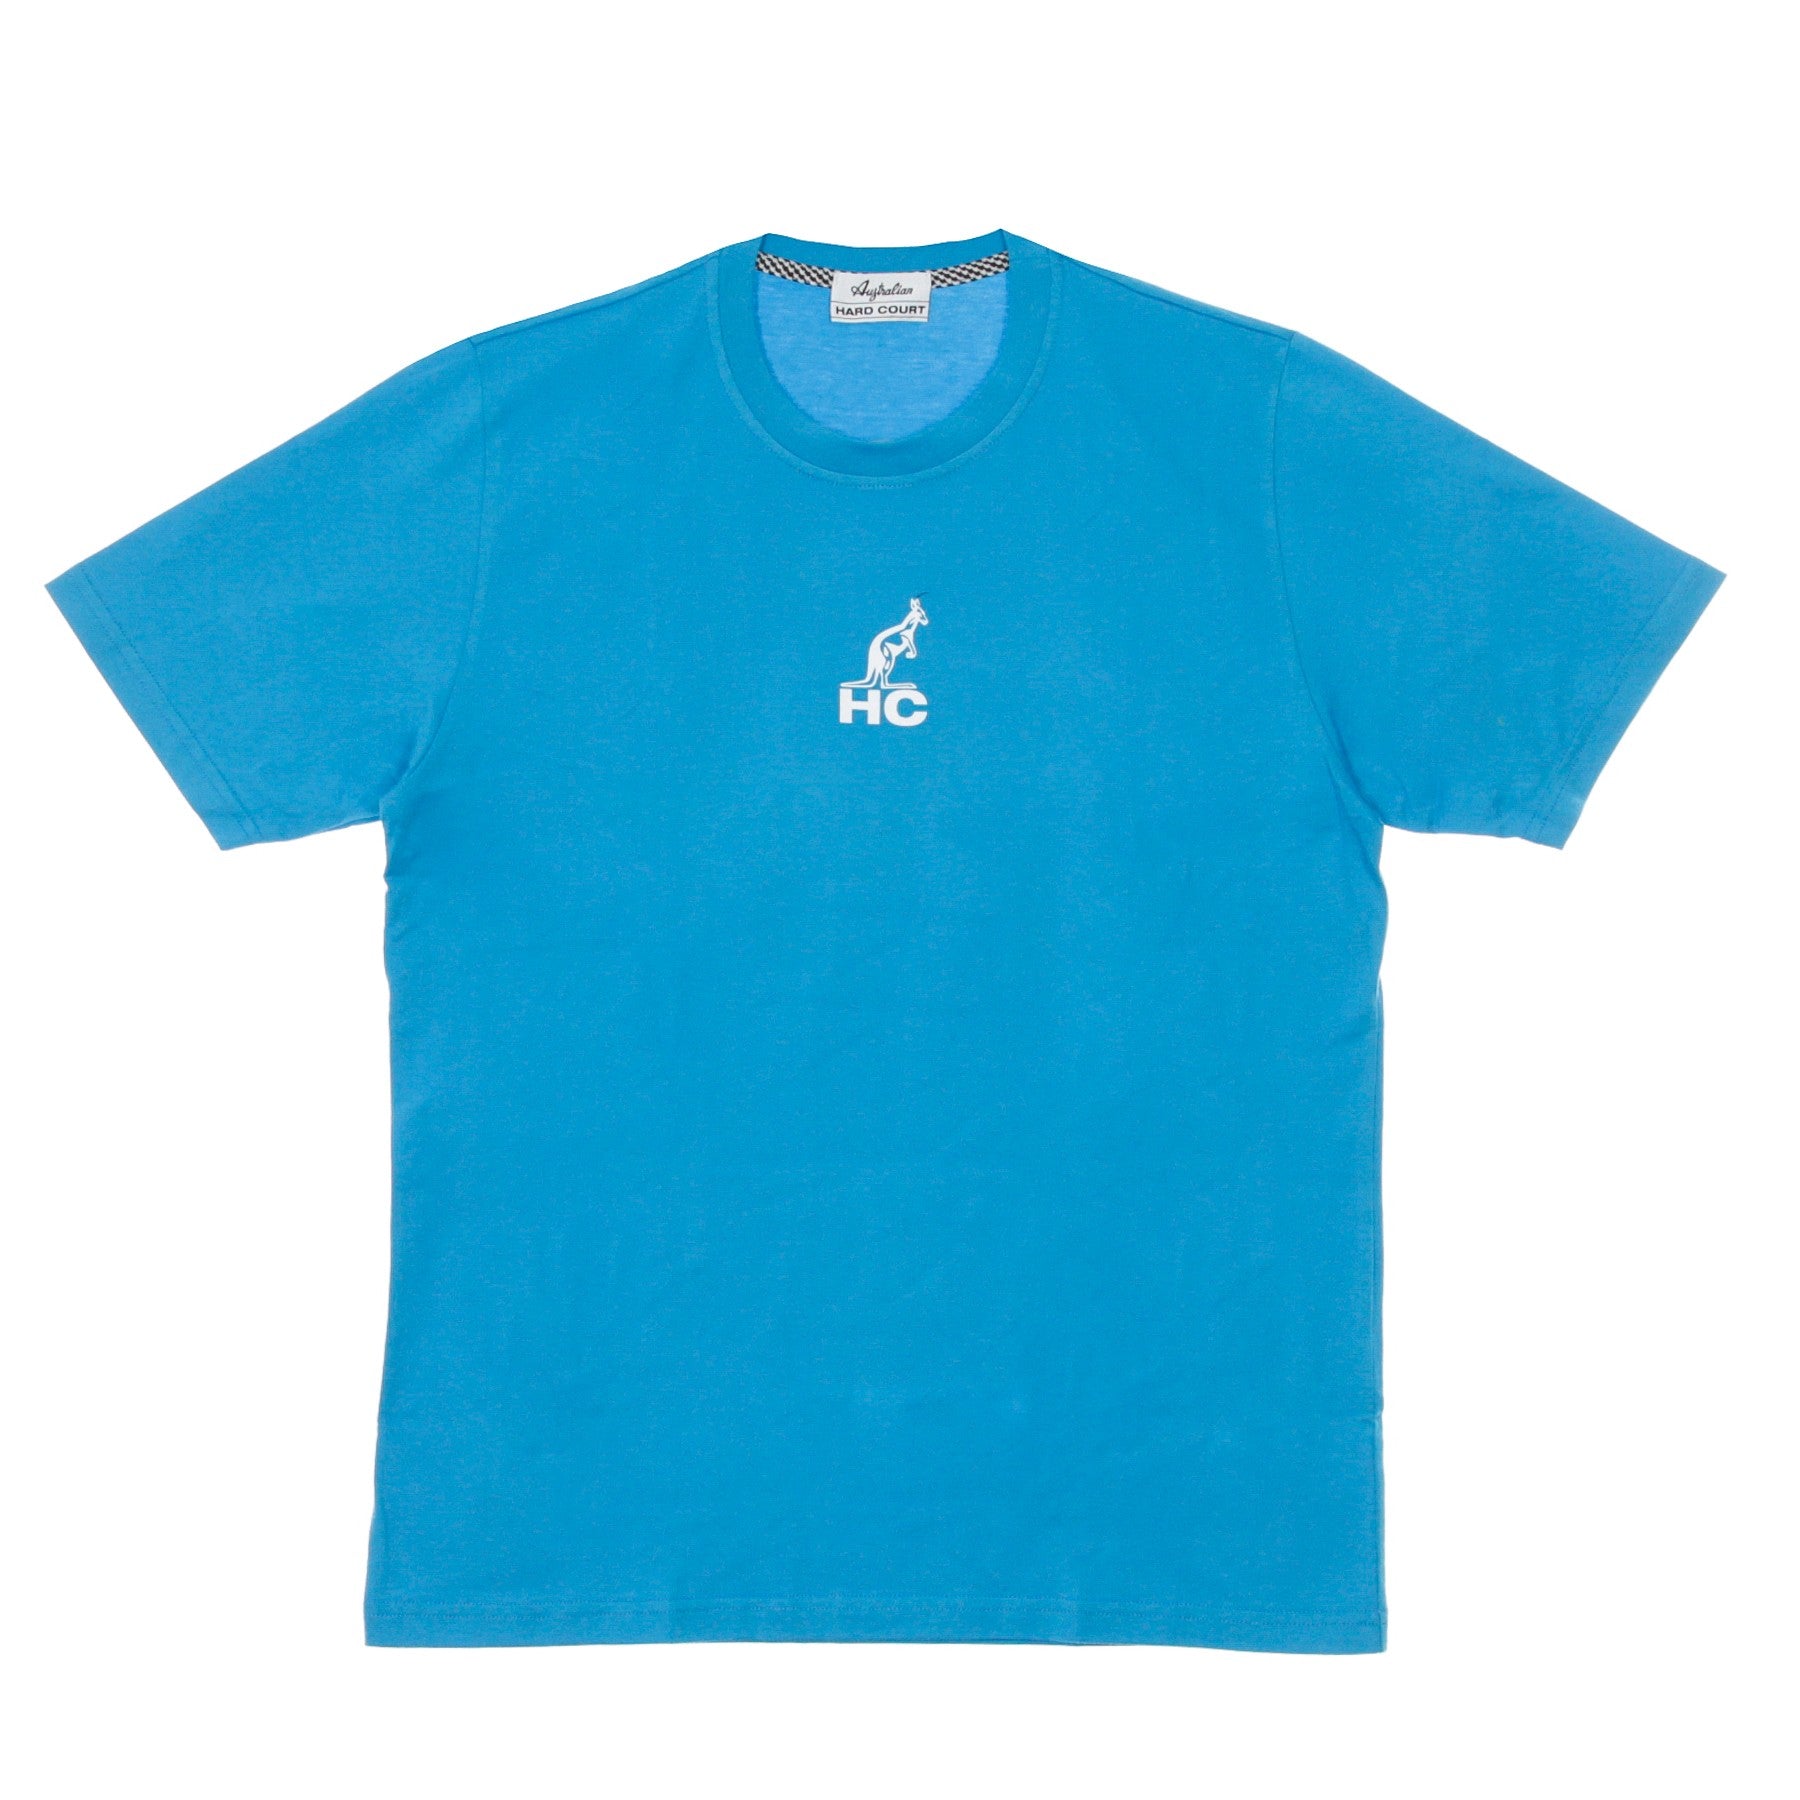 Kangaroo Print Turquoise Men's T-Shirt